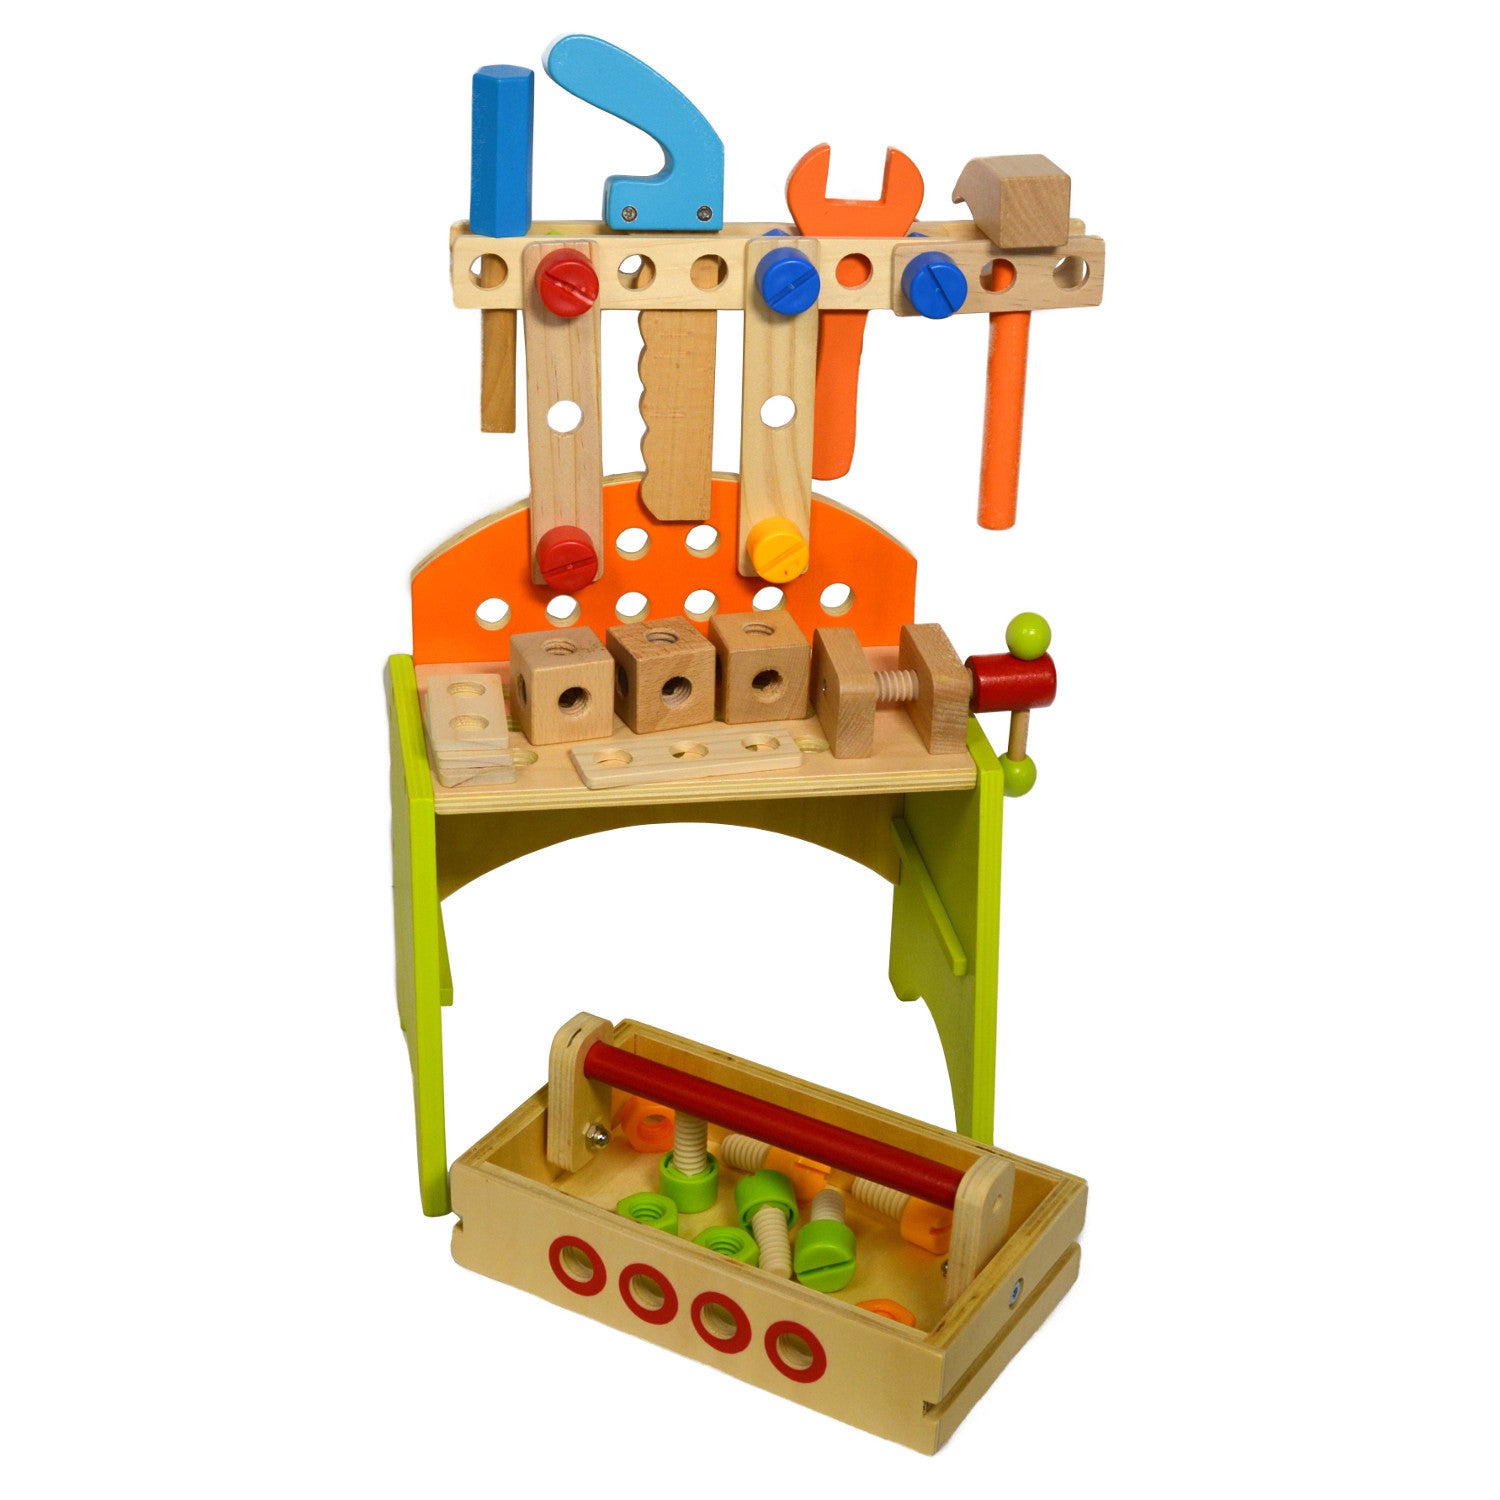 toy wooden workbench set